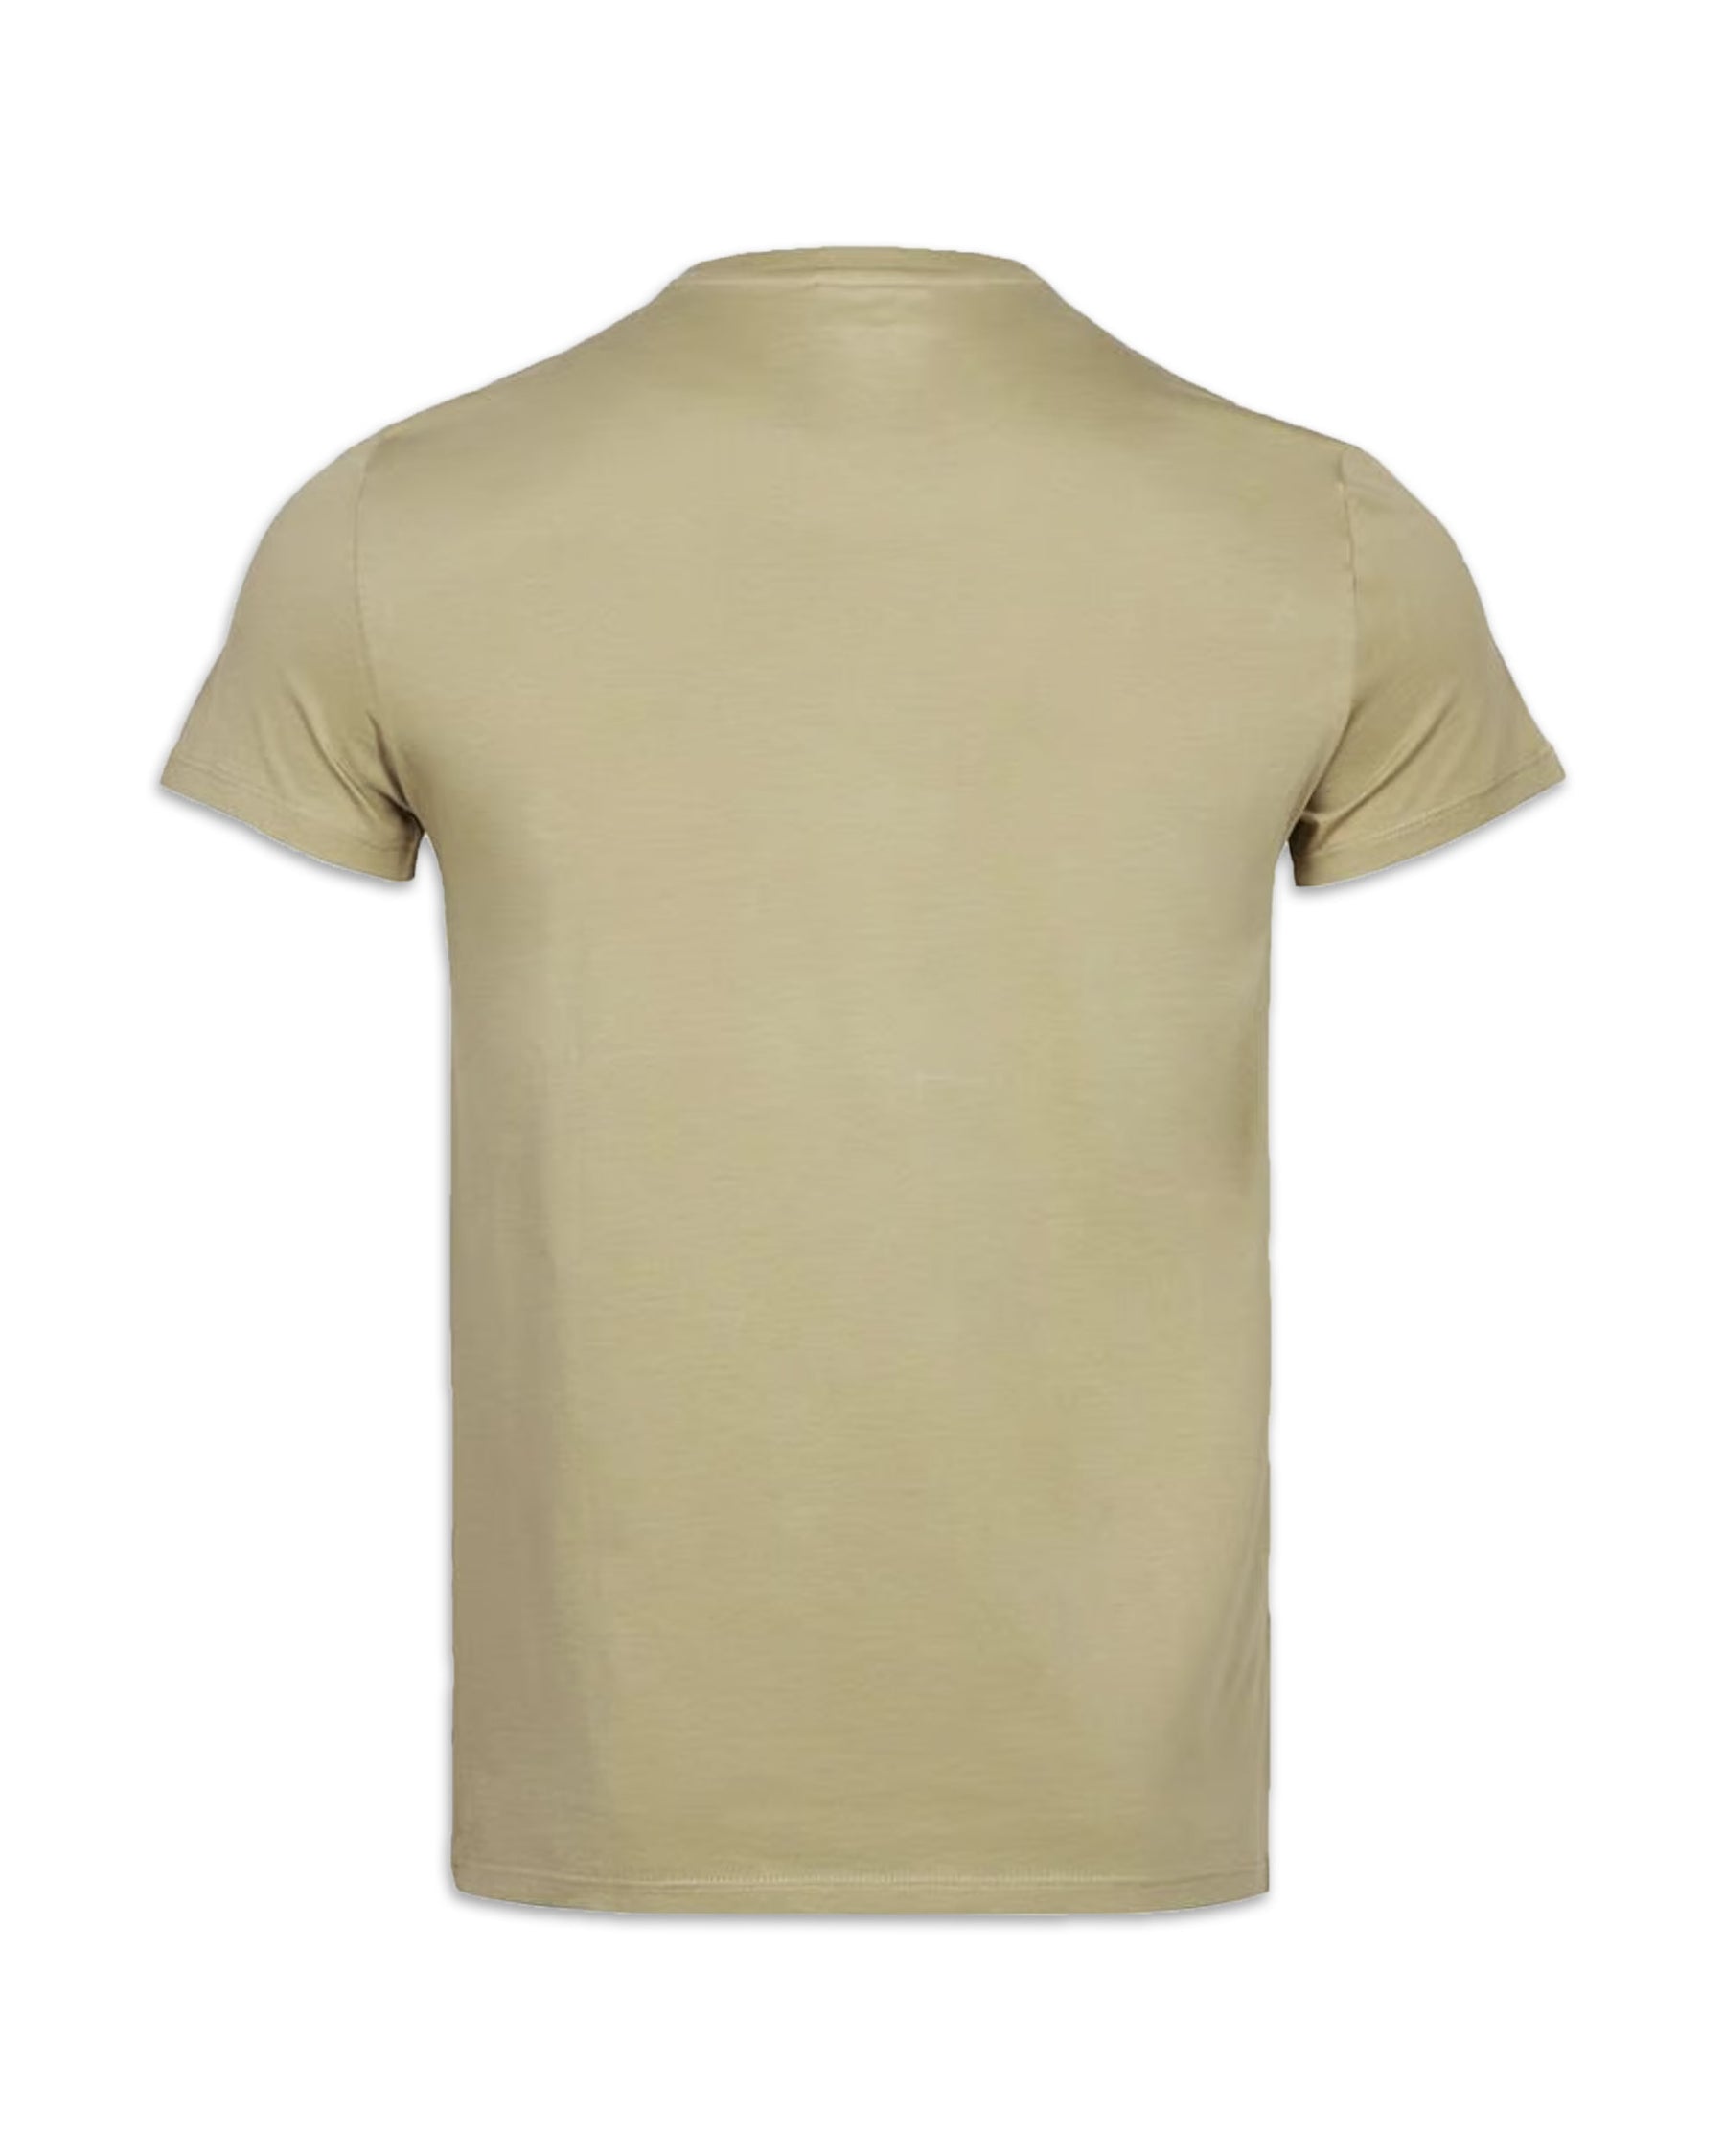 T-Shirt Uomo Lacoste Basic Logo beige